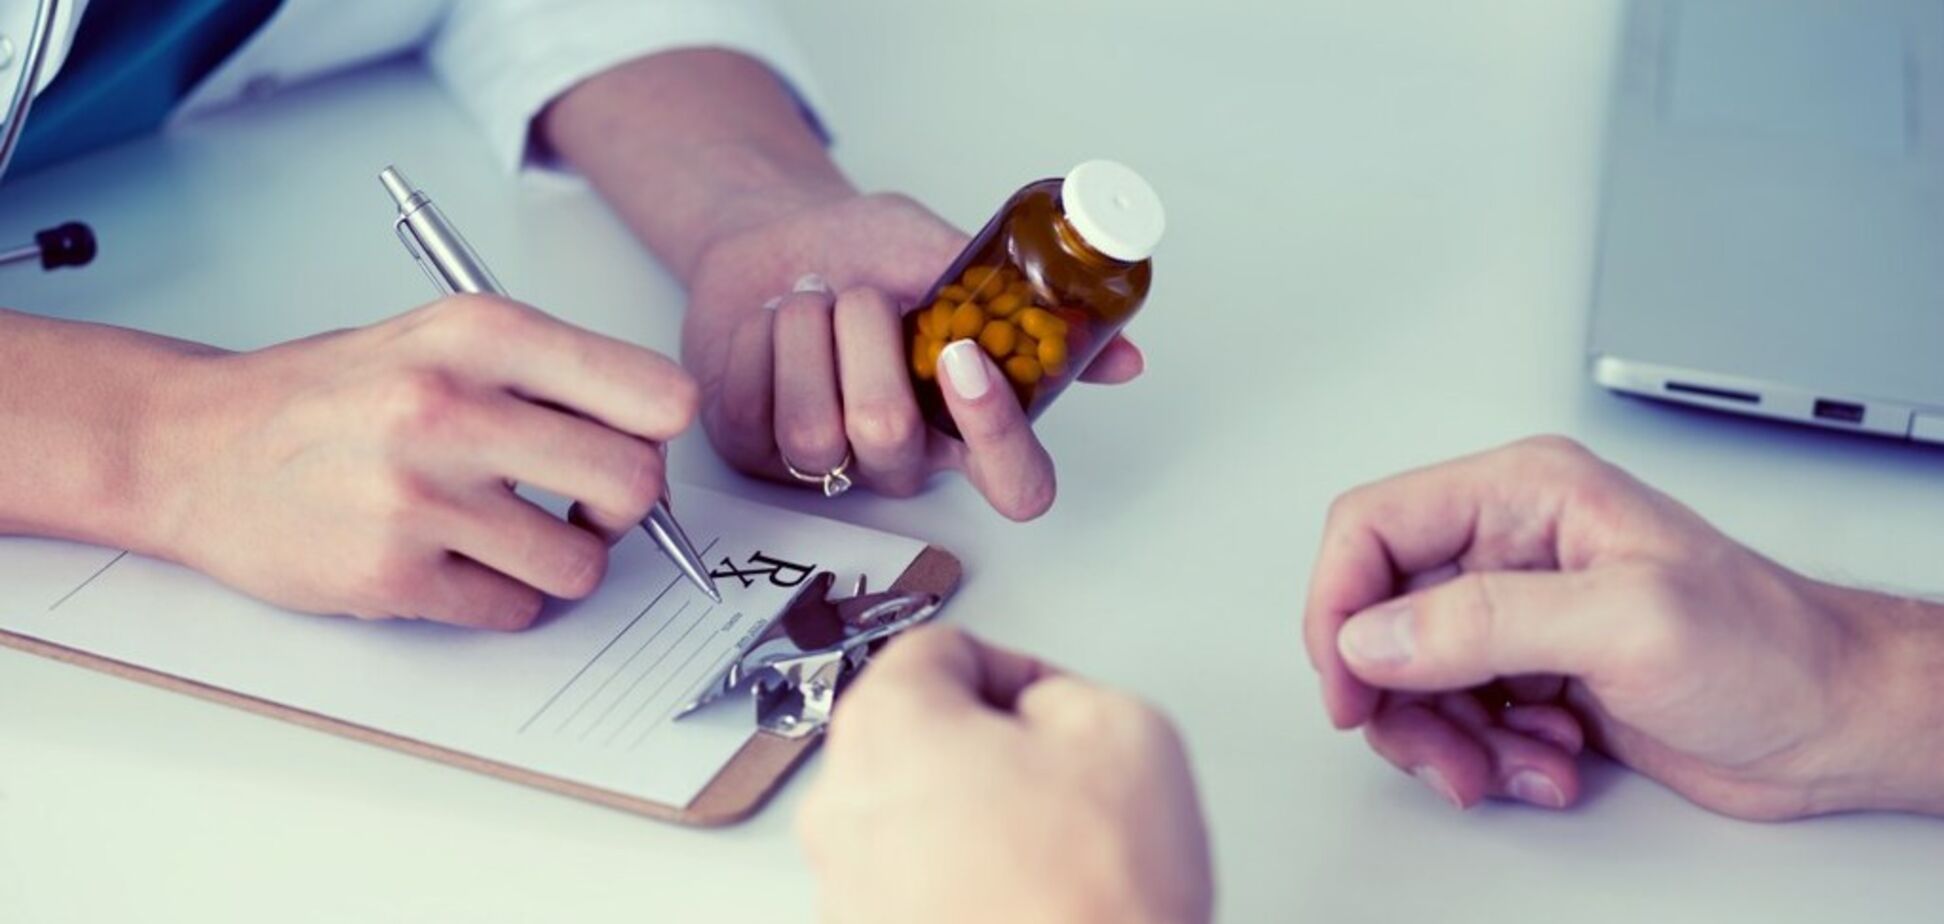 Антидепрессанты вредят здоровью: психиатры предупредили об опасности